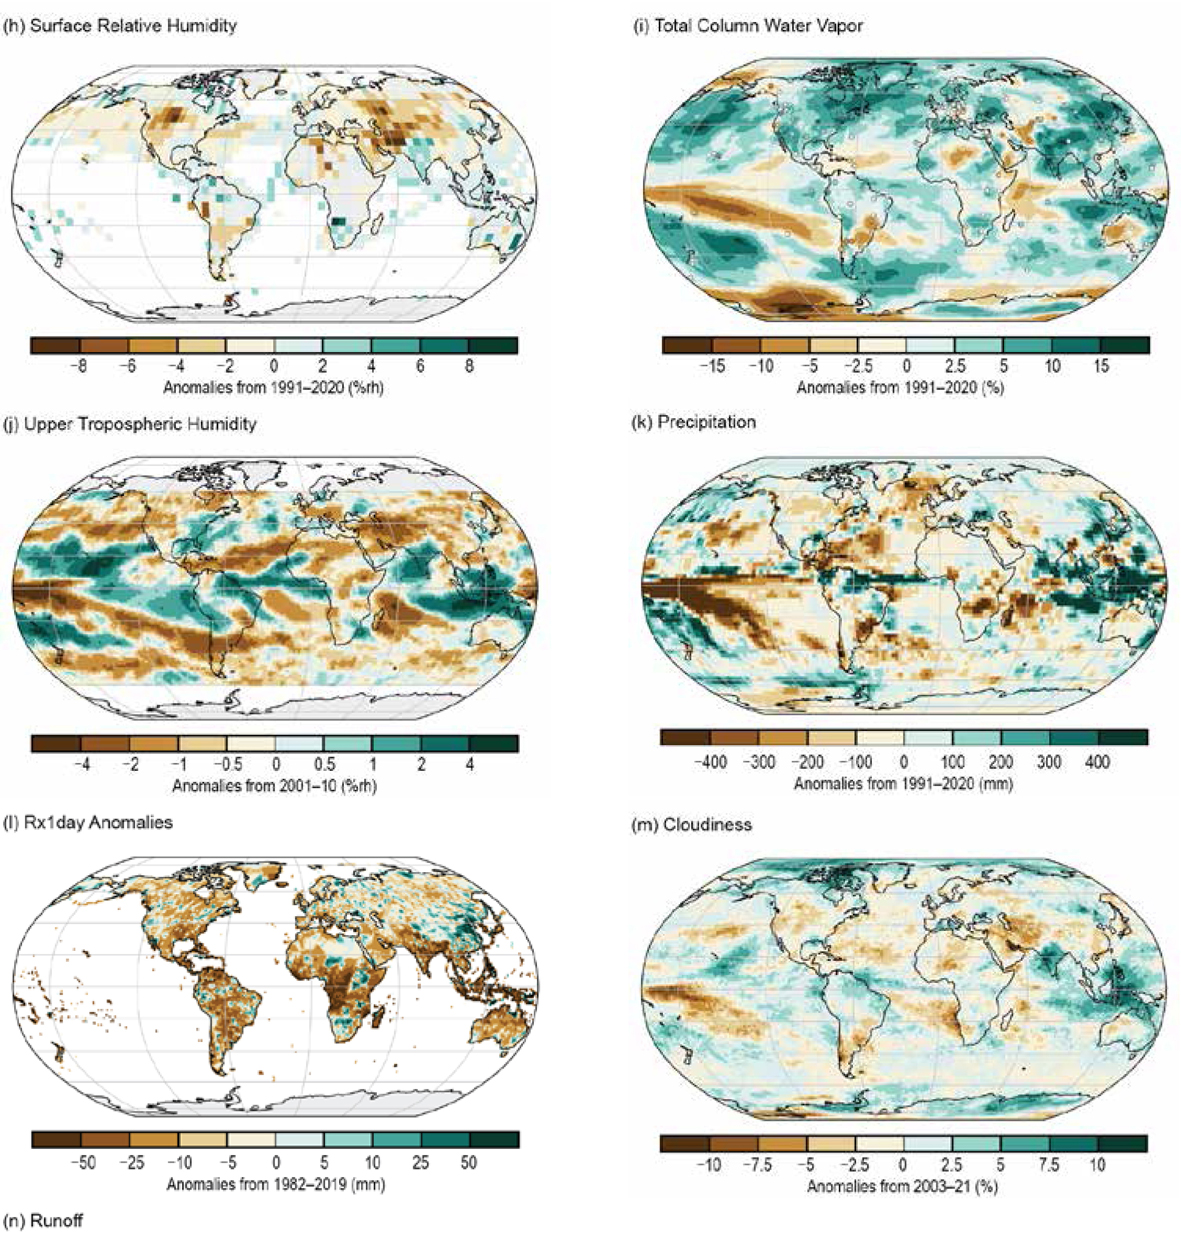 Charakterystyki klimatyczne w 2021 roku. Anomalie: wilgotności powietrza (h), całkowitej zawartości pary wodnej w kolumnie (i), wilgotności górnej troposfery (j), sumy opadów (k), maksymalne anomalie opadów rocznych (e), zachmurzenia (m).